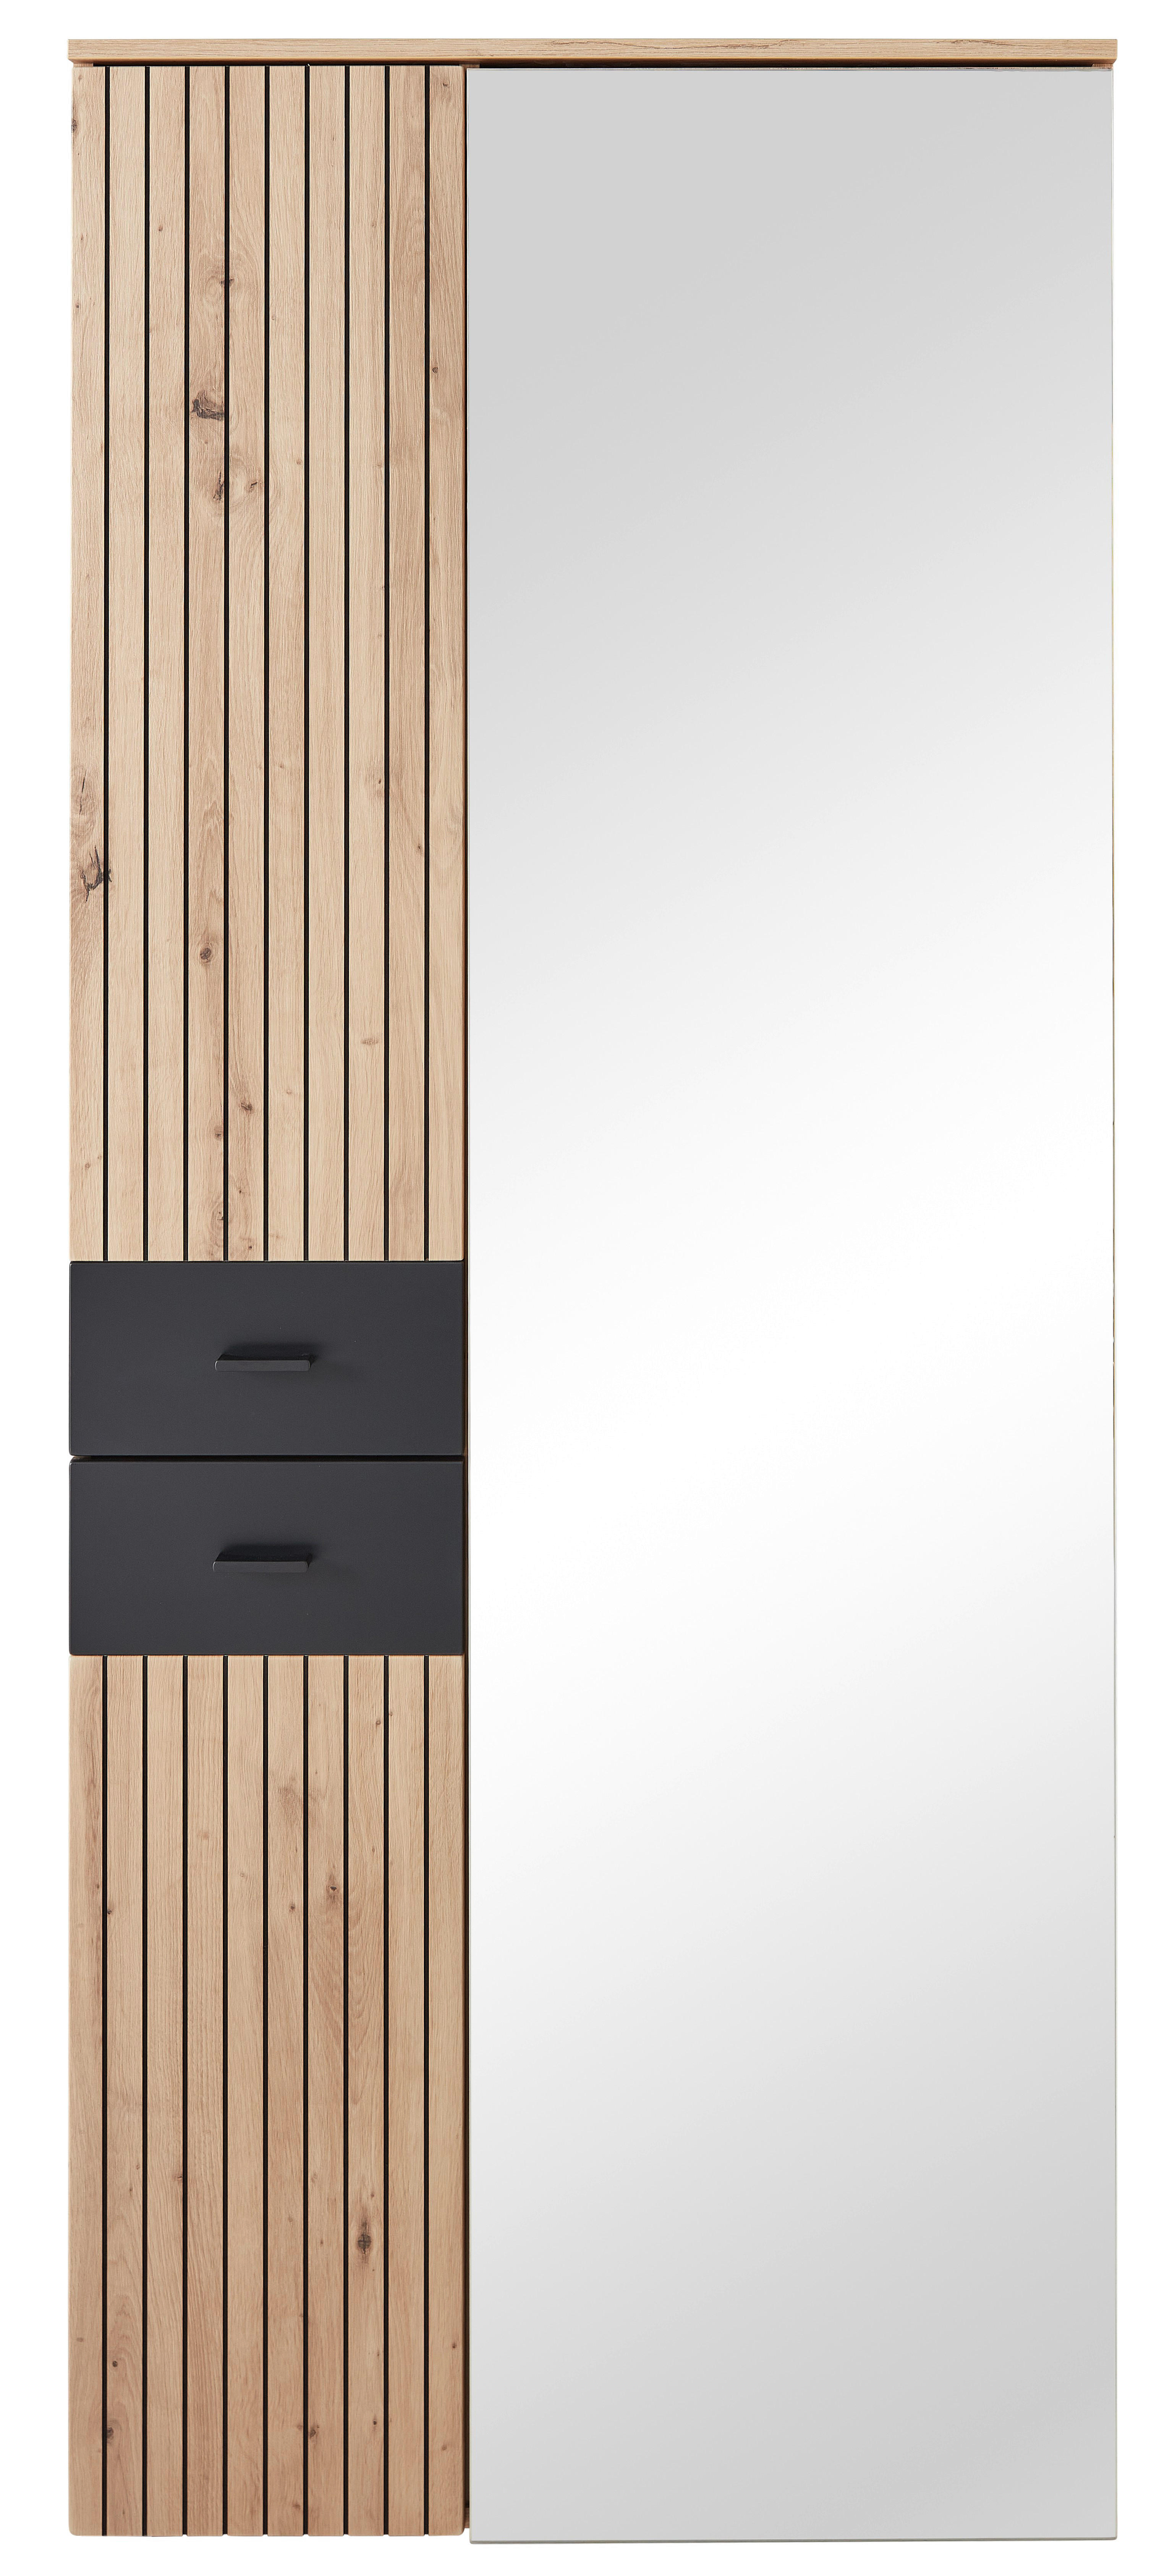 PREDSIEŇOVÁ SKRIŇA, čierna, dub artisan, 84/202/38 cm - čierna/dub artisan, Design, kov/kompozitné drevo (84/202/38cm) - Voleo